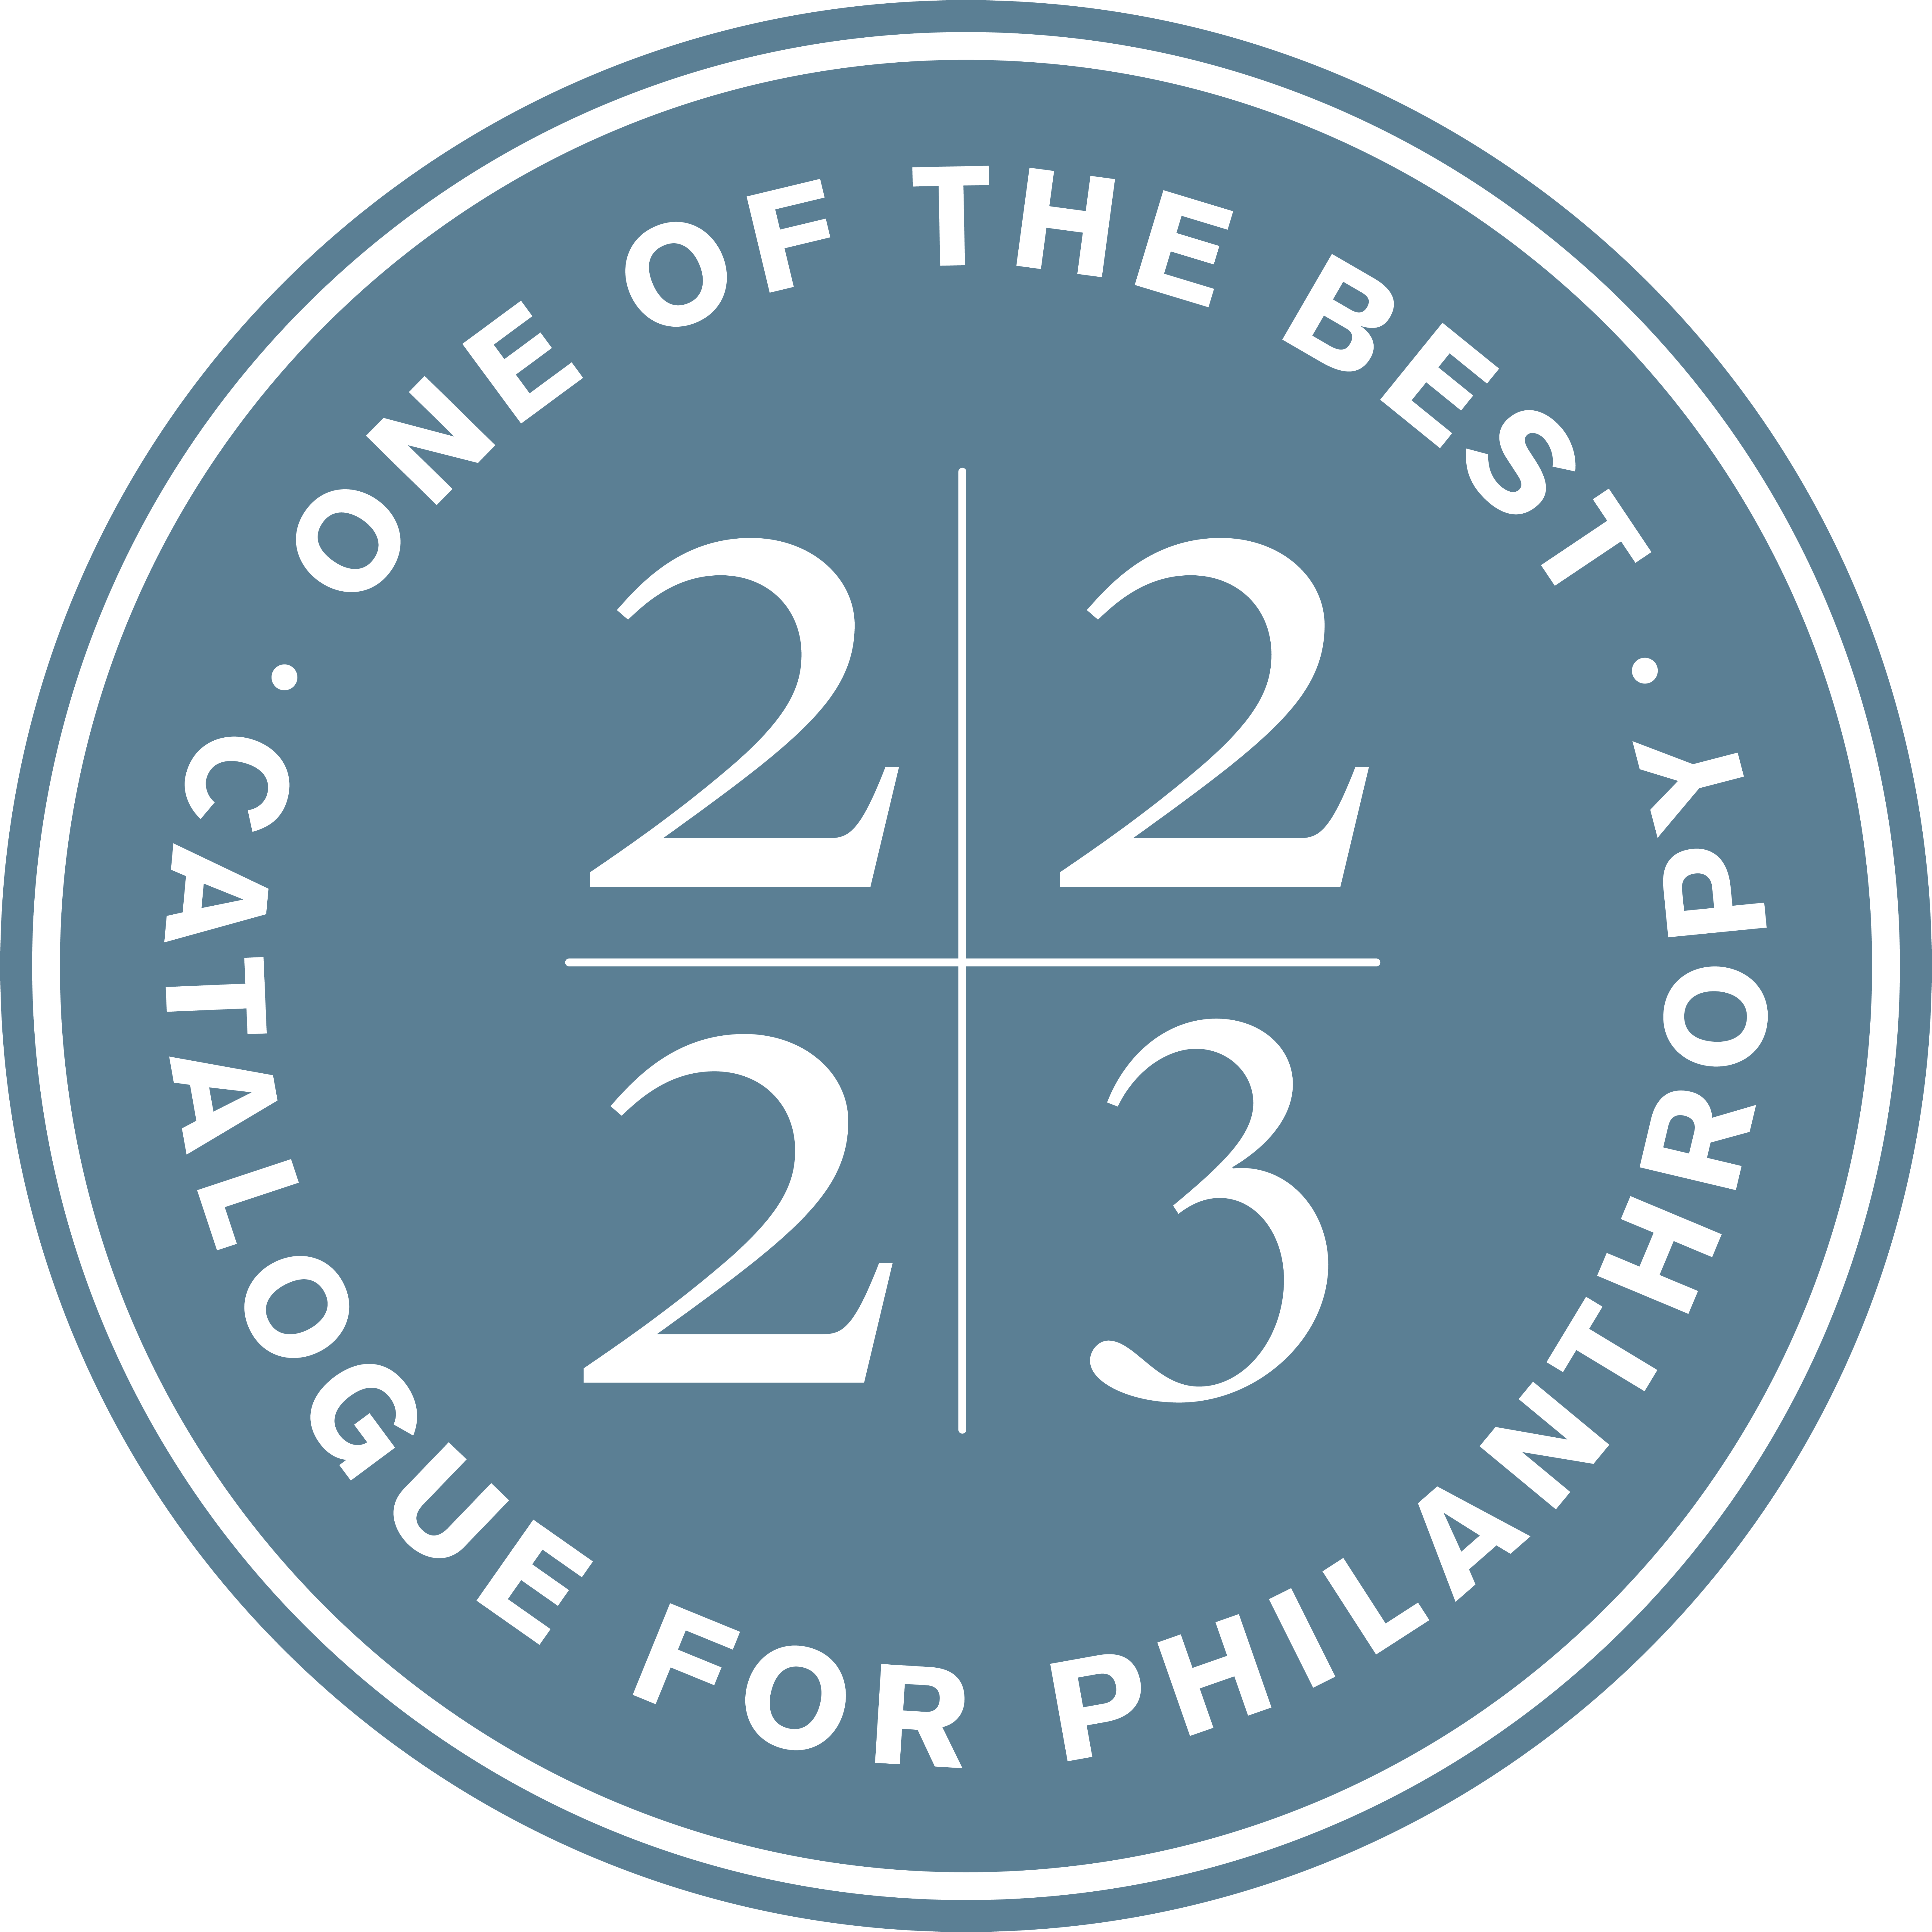 Catalogue for Philanthropy 2022 2023